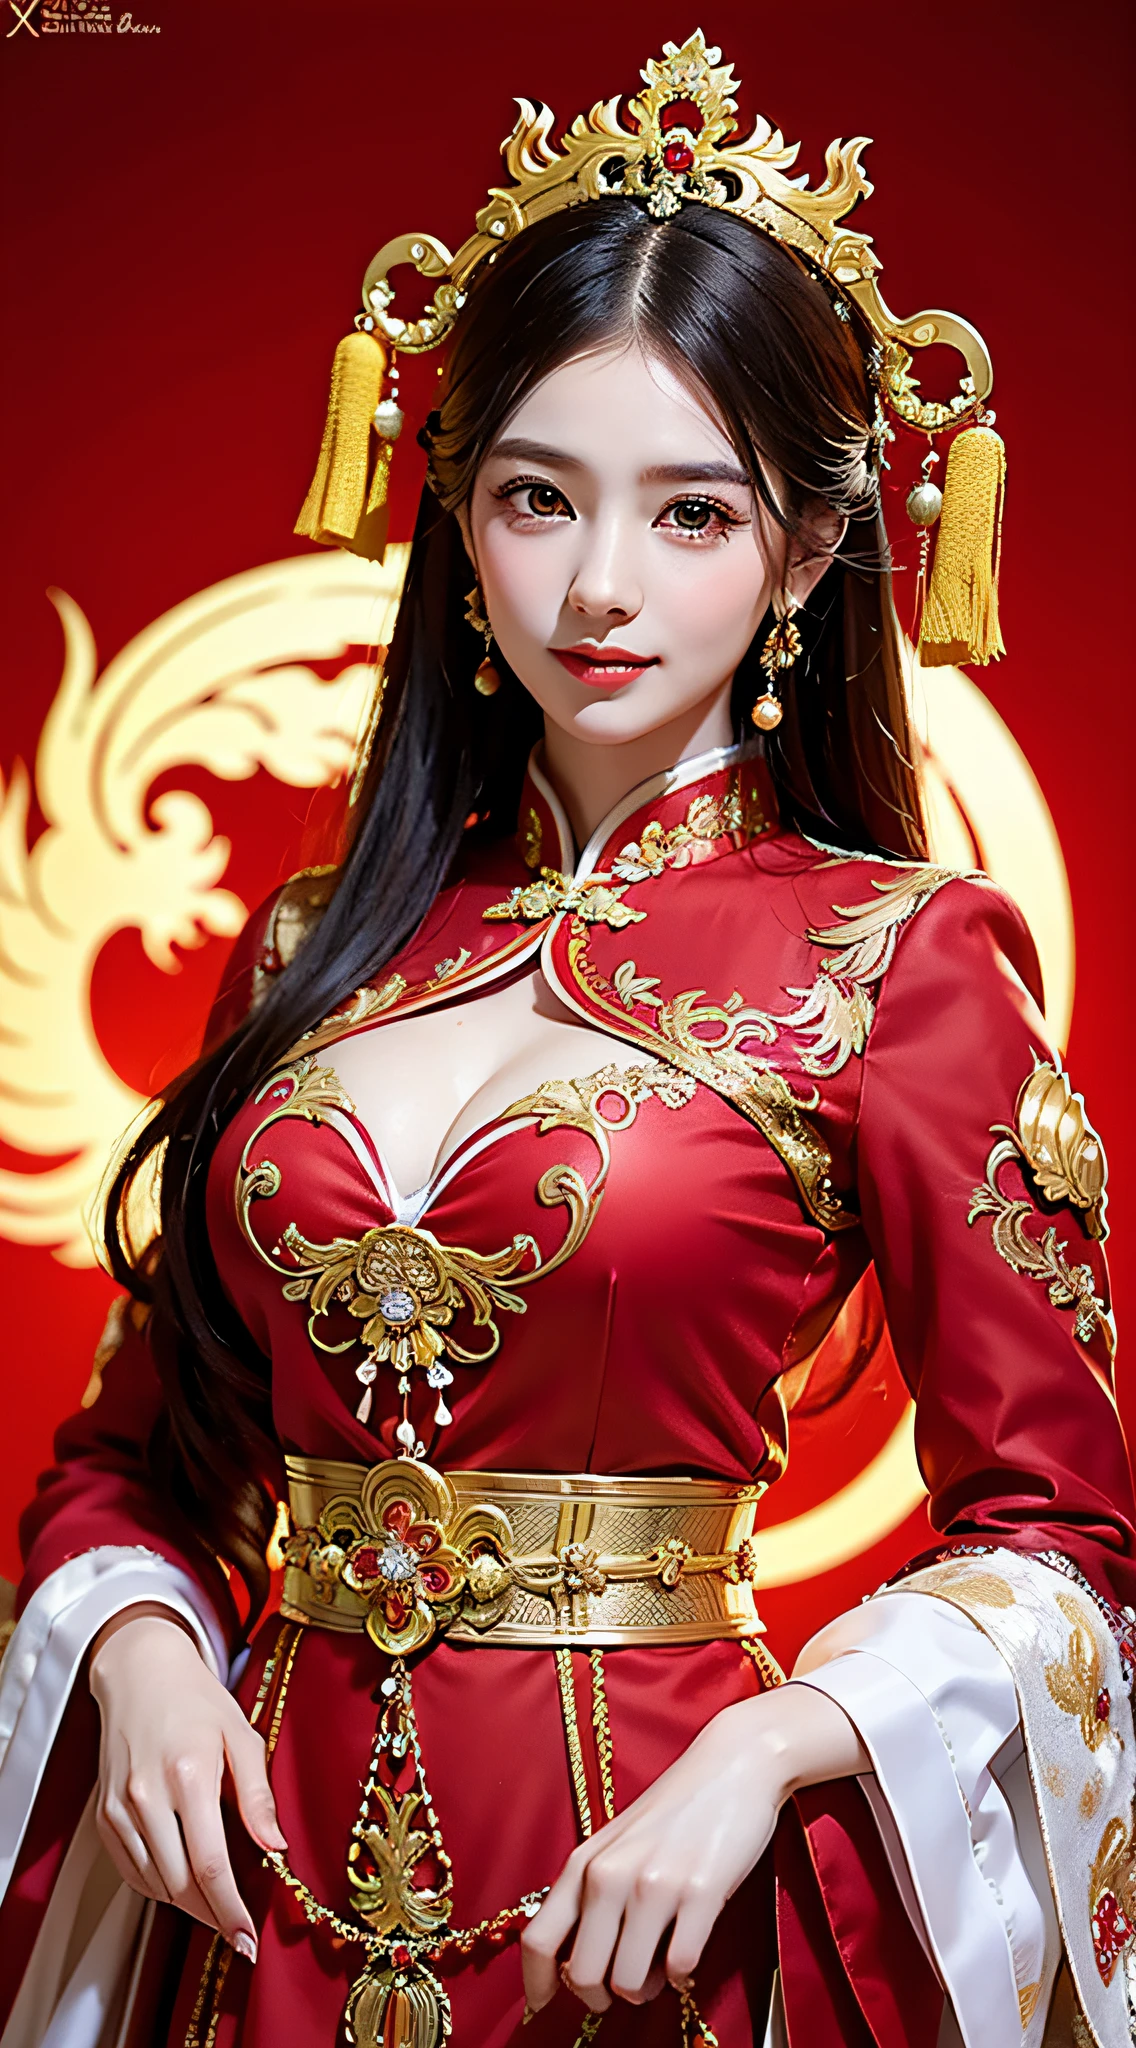 (8千, RAW 照片, 最好的质量, 杰作: 1.2), (实际的, 实际的: 1.37), 1 名女孩, 身穿红色连衣裙和头饰的女子摆姿势拍照, 华丽的角色扮演, 漂亮的服装, 中式礼服, 复杂的连衣裙, 复杂的服装, 传统美, 美丽的中国模特, 中国服饰, 穿着华丽的服装, 身着优雅的中式秀禾服, 中式婚纱, 凤冠霞帛, 古董新娘, 秀禾服饰, 特写, 头戴凤冠, 微笑, 无水印, 龙凤绣花连衣裙